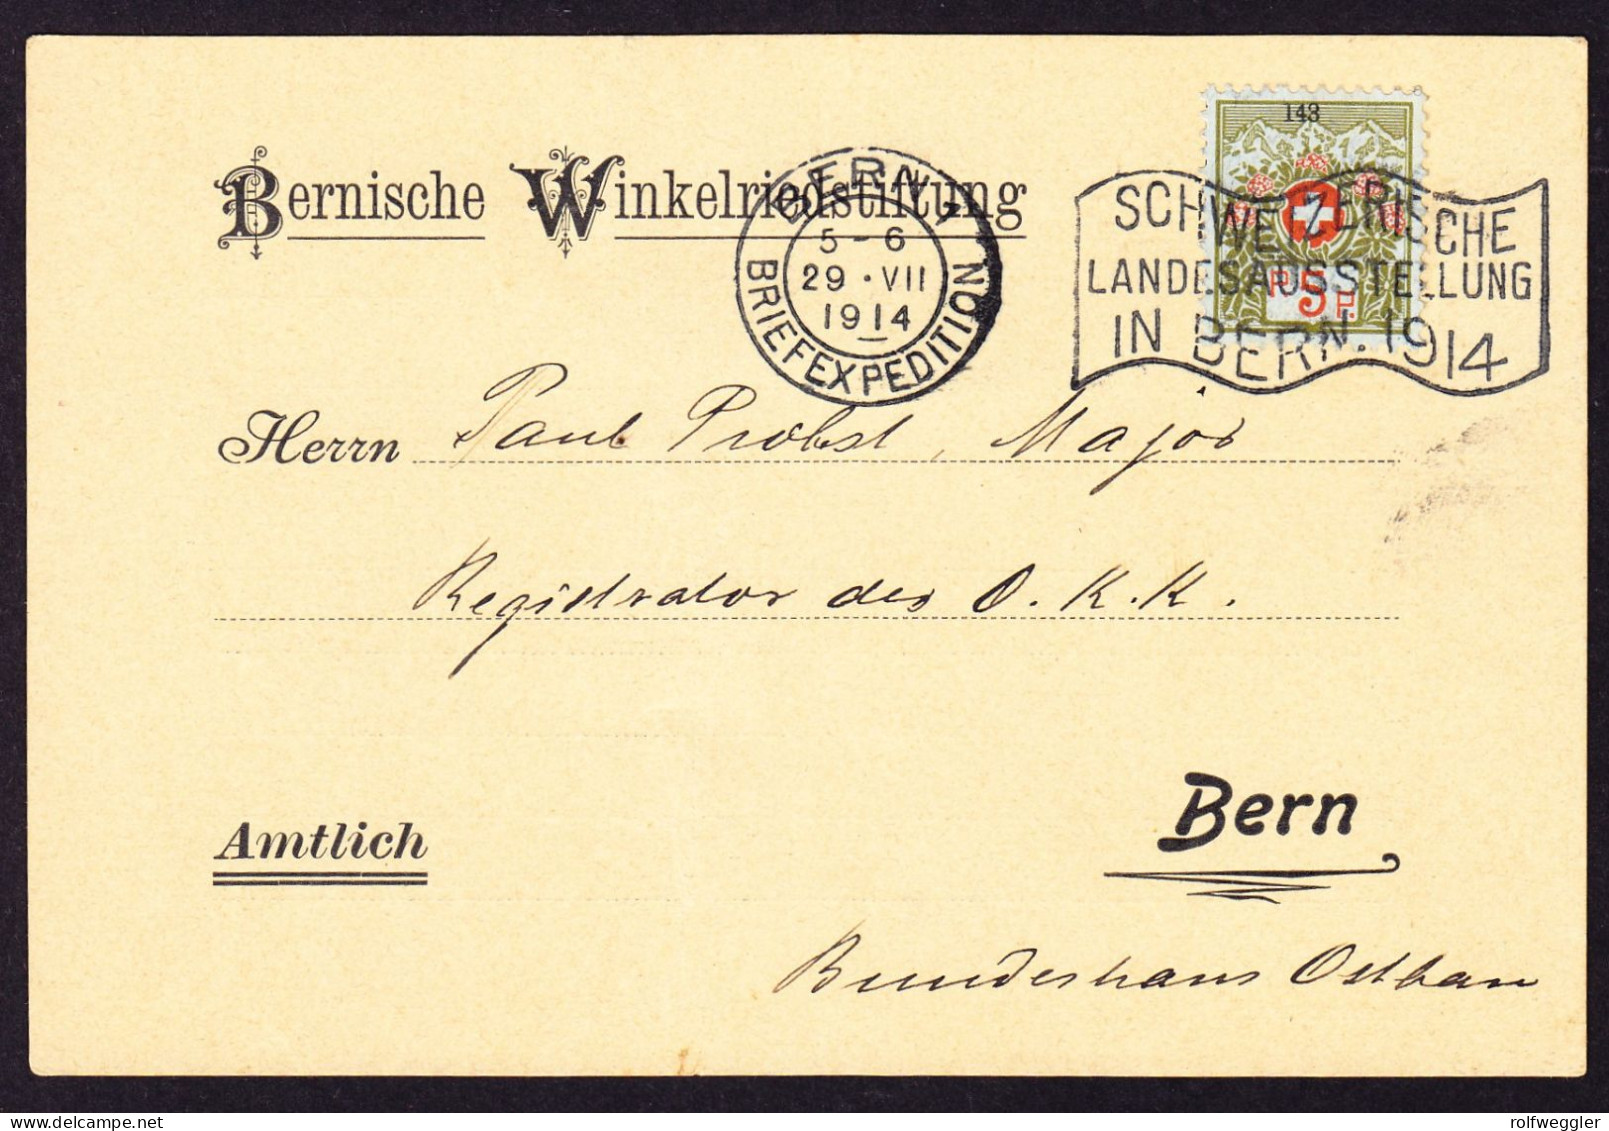 1914 5 Rp Marke Mit Kleiner Nummer Mit Landesausstellung Bern Stempel Auf Karte: Bernische Winkelriedstiftung - Vrijstelling Van Portkosten